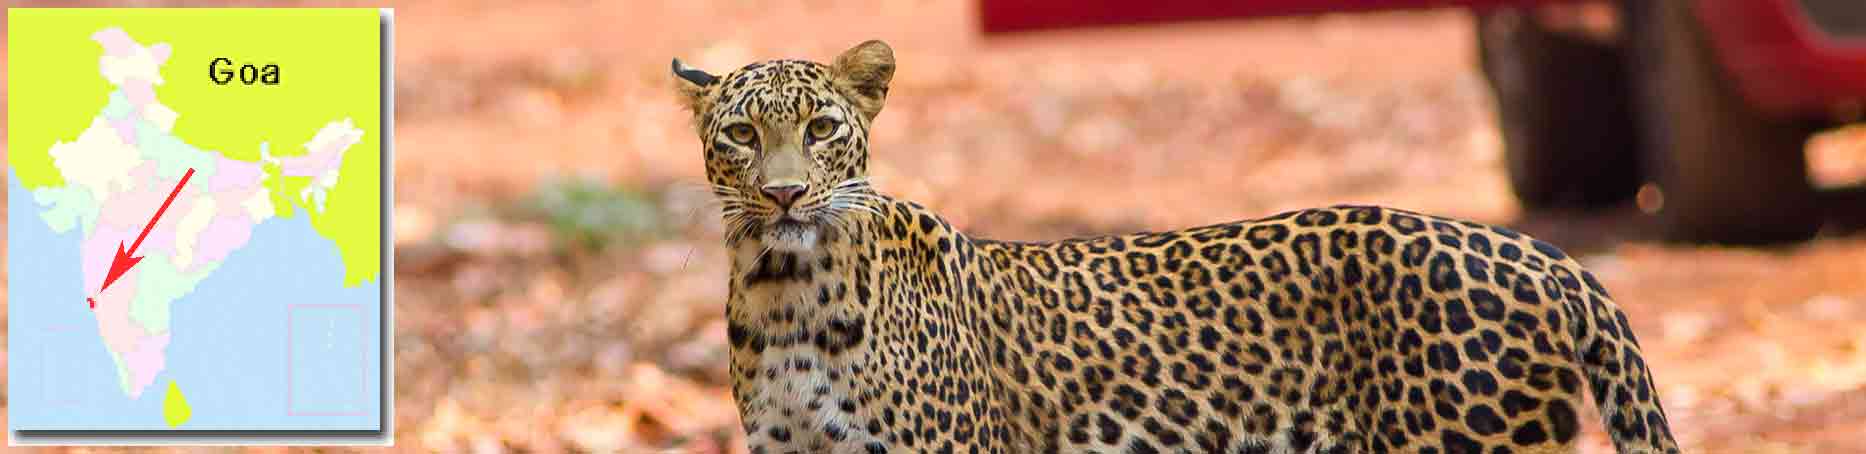 leopardo en cotigao